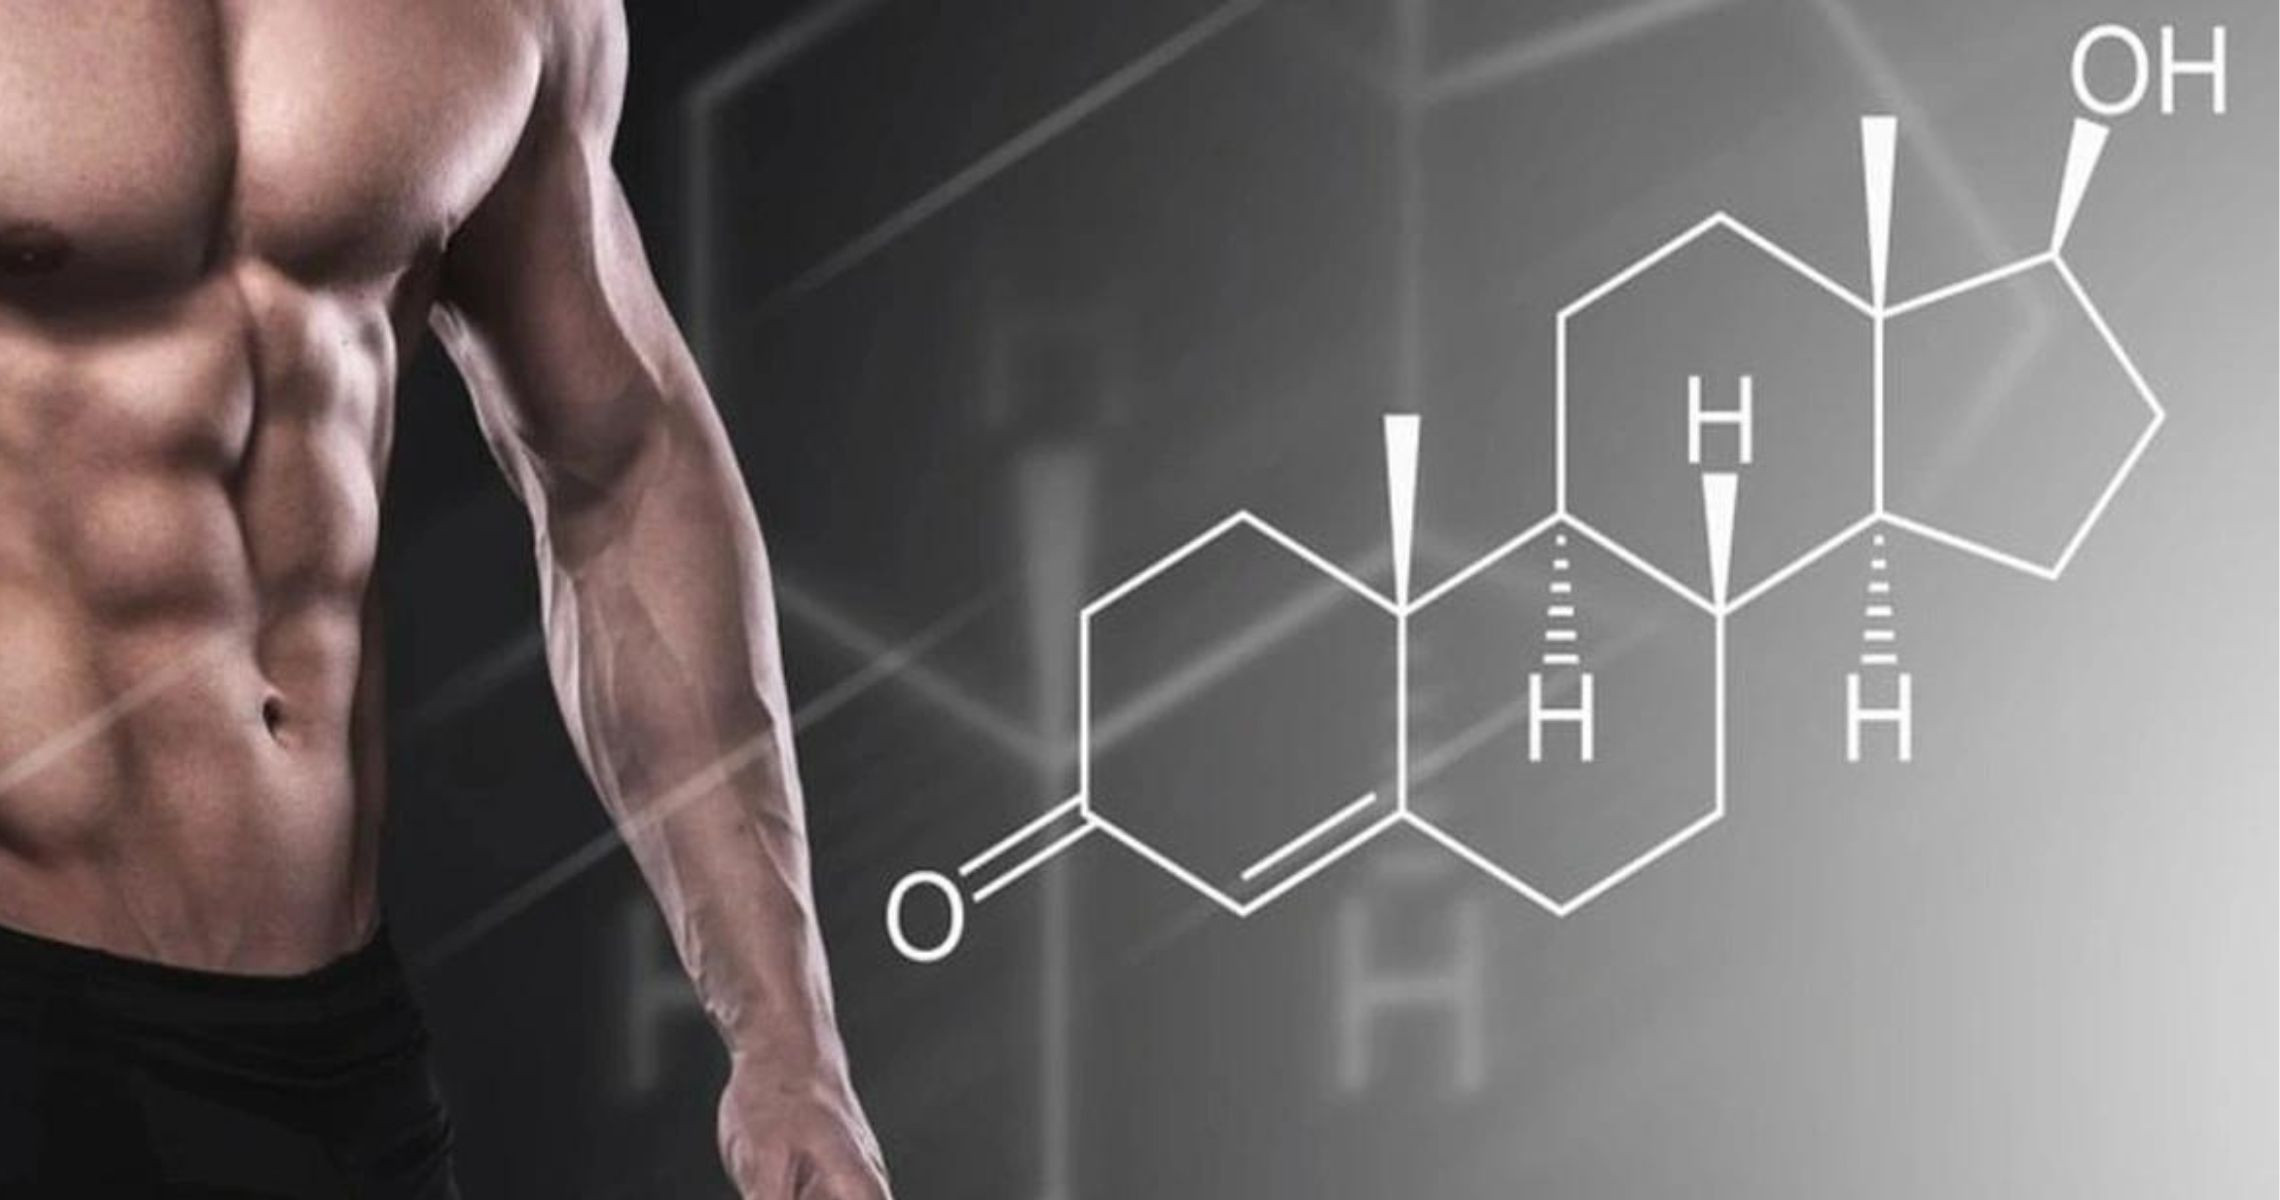 Testosterone giúp phát triển cơ bắp không?